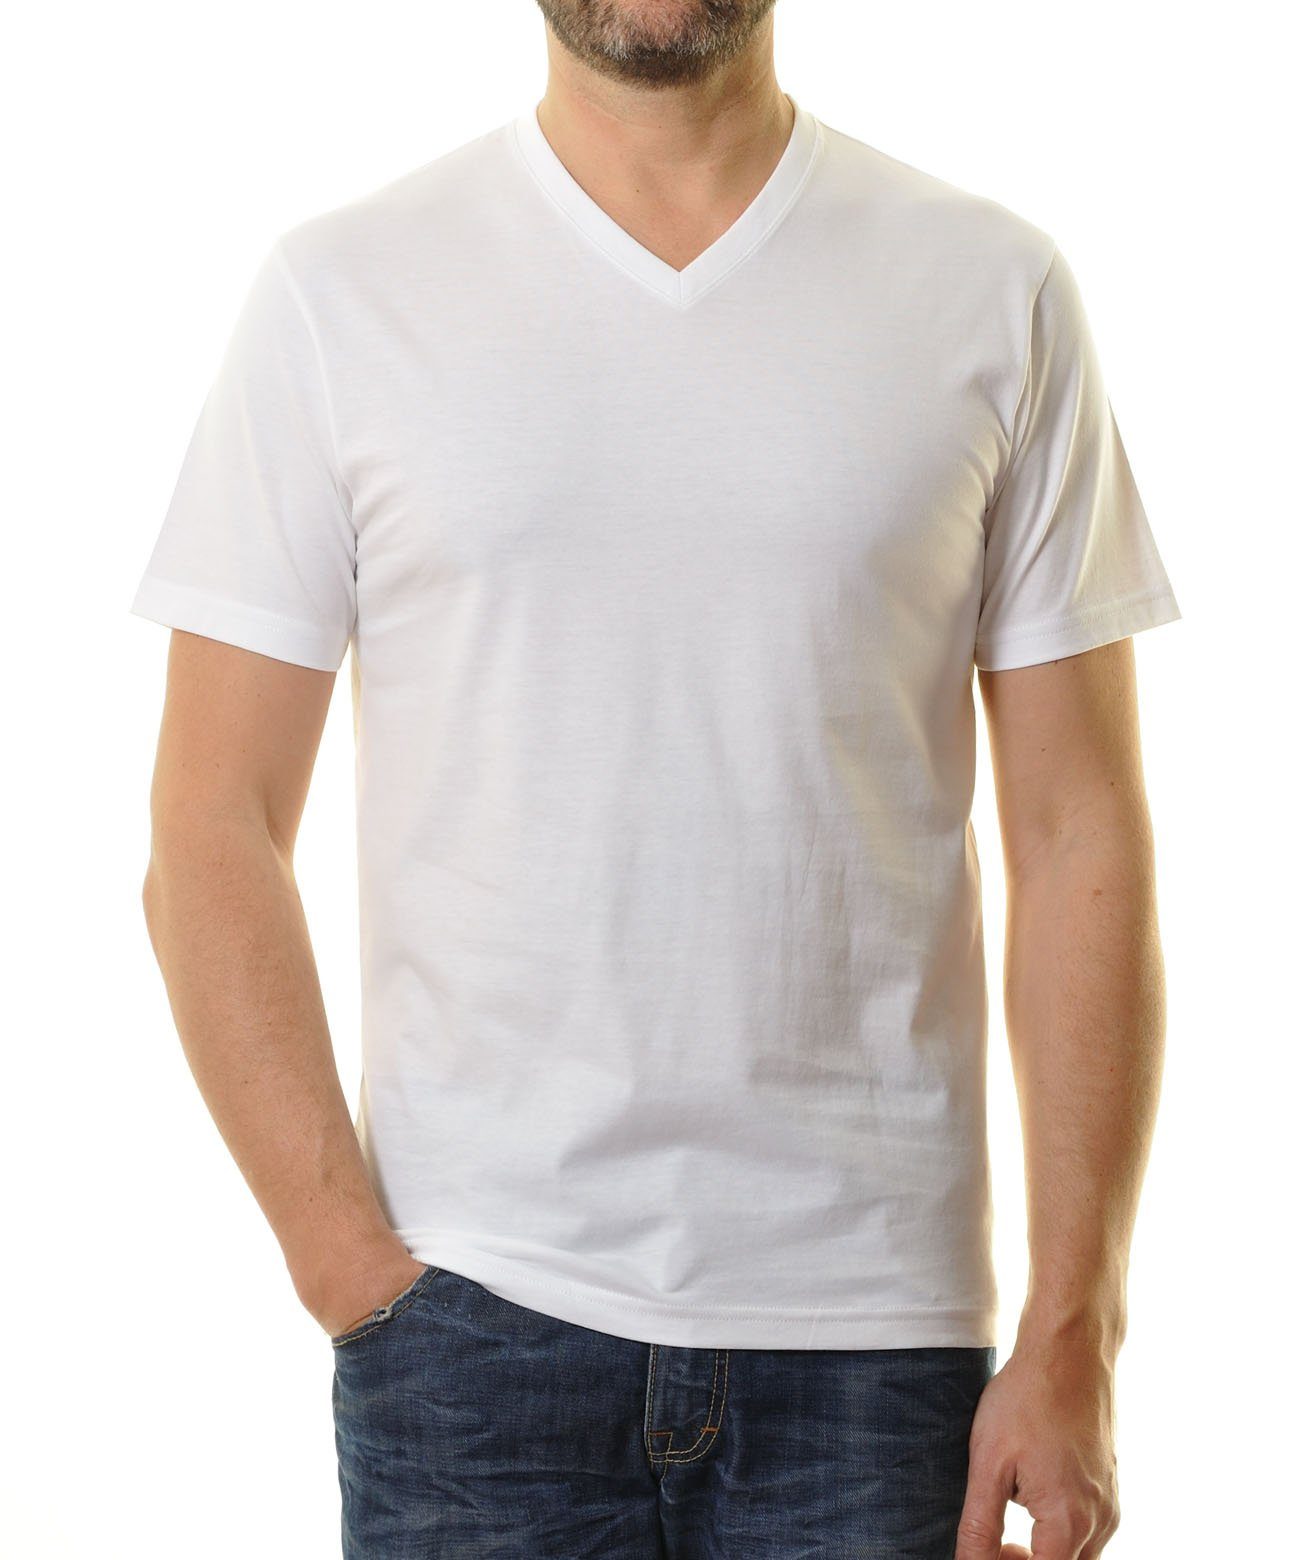 RAGMAN T-Shirt Weiss